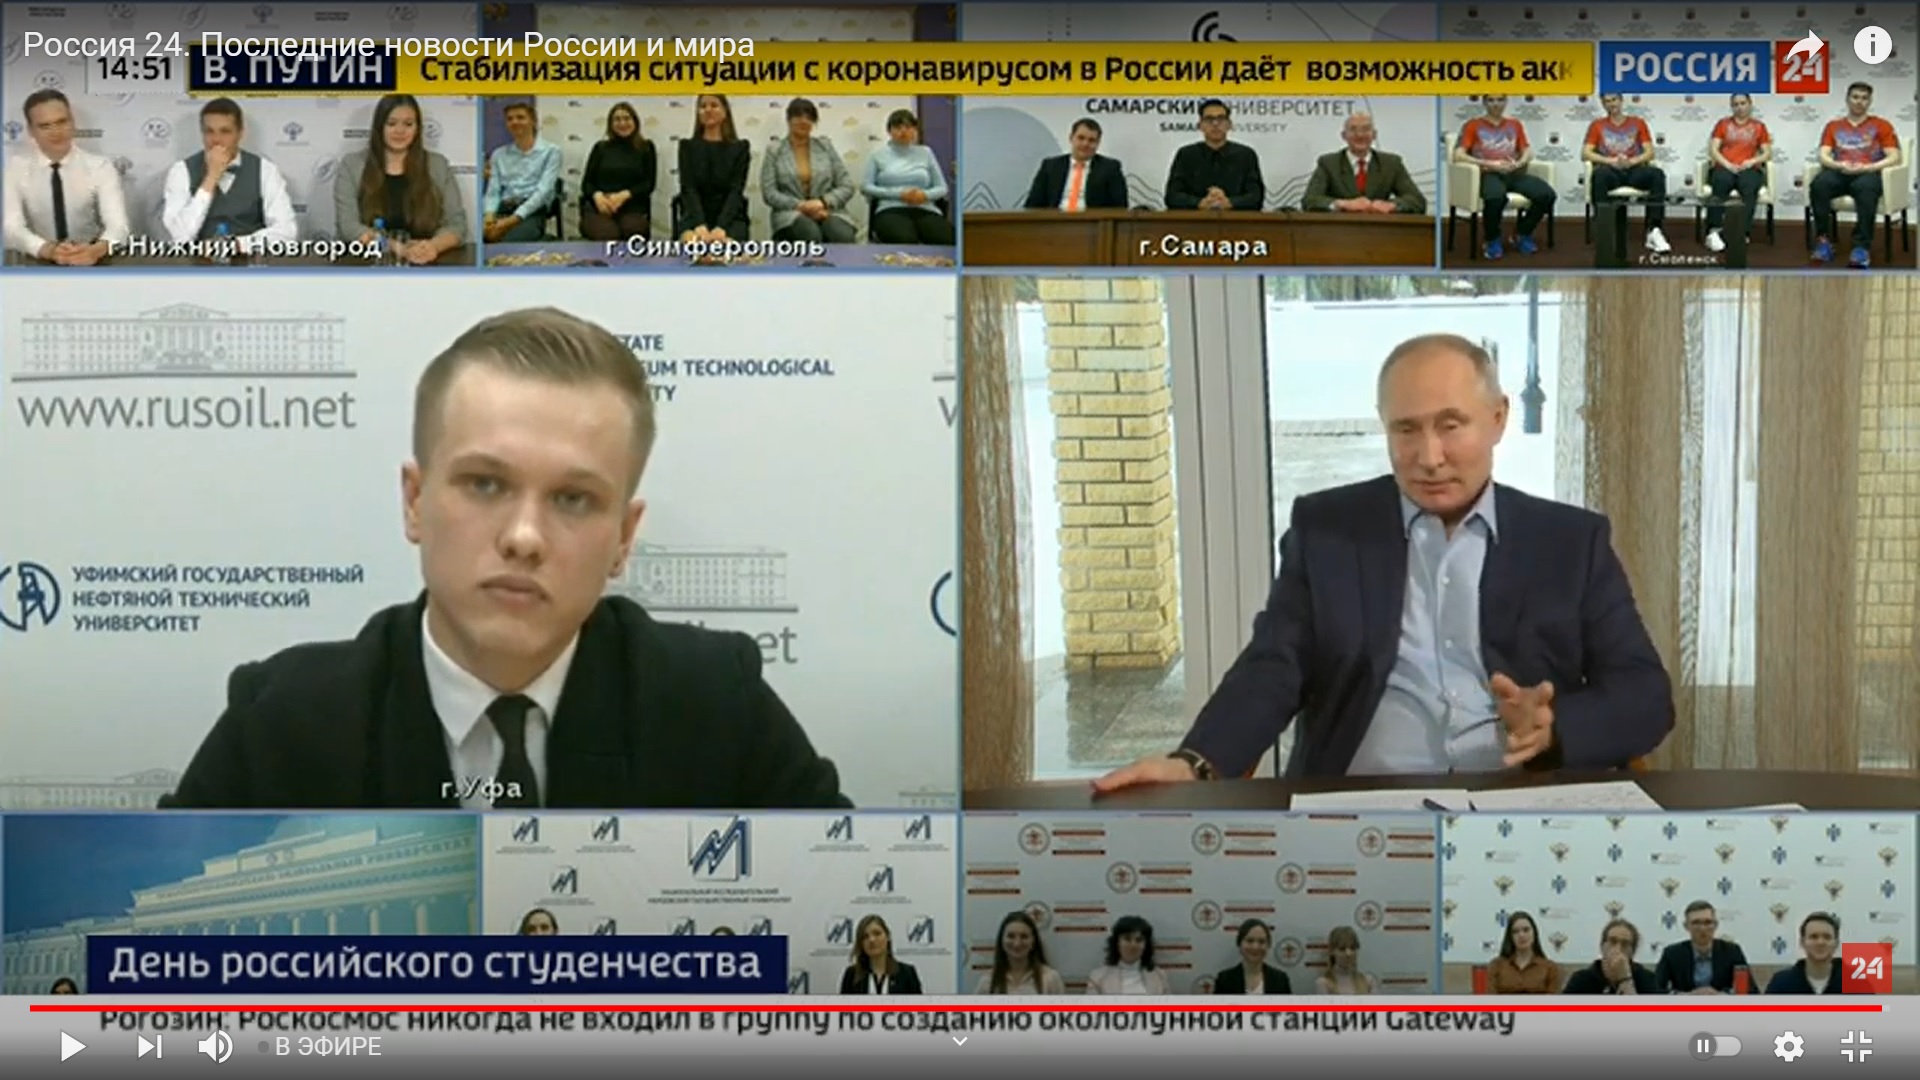 «Скучно, девочки». Путин не смотрел фильм Навального про дворец, только «видеоподборки»